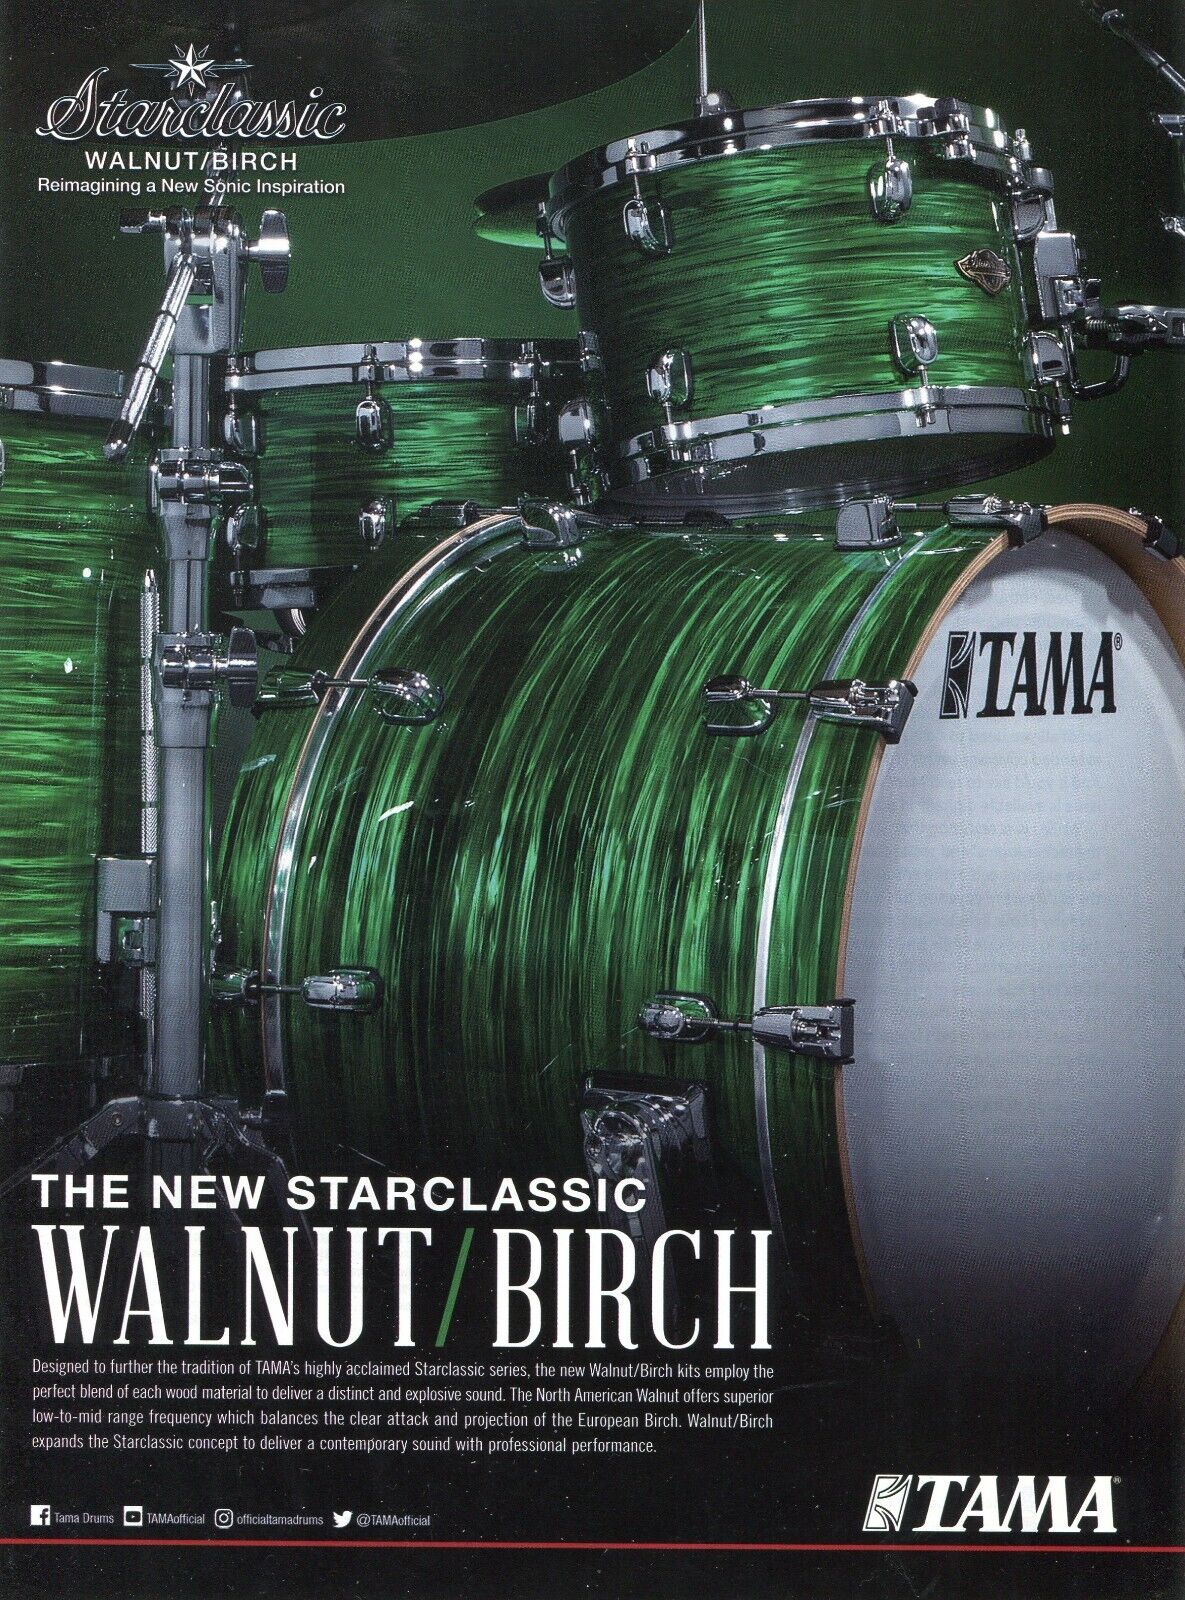 2019 Print Ad of Tama Starclassic Walnut/Birch Drum Kit